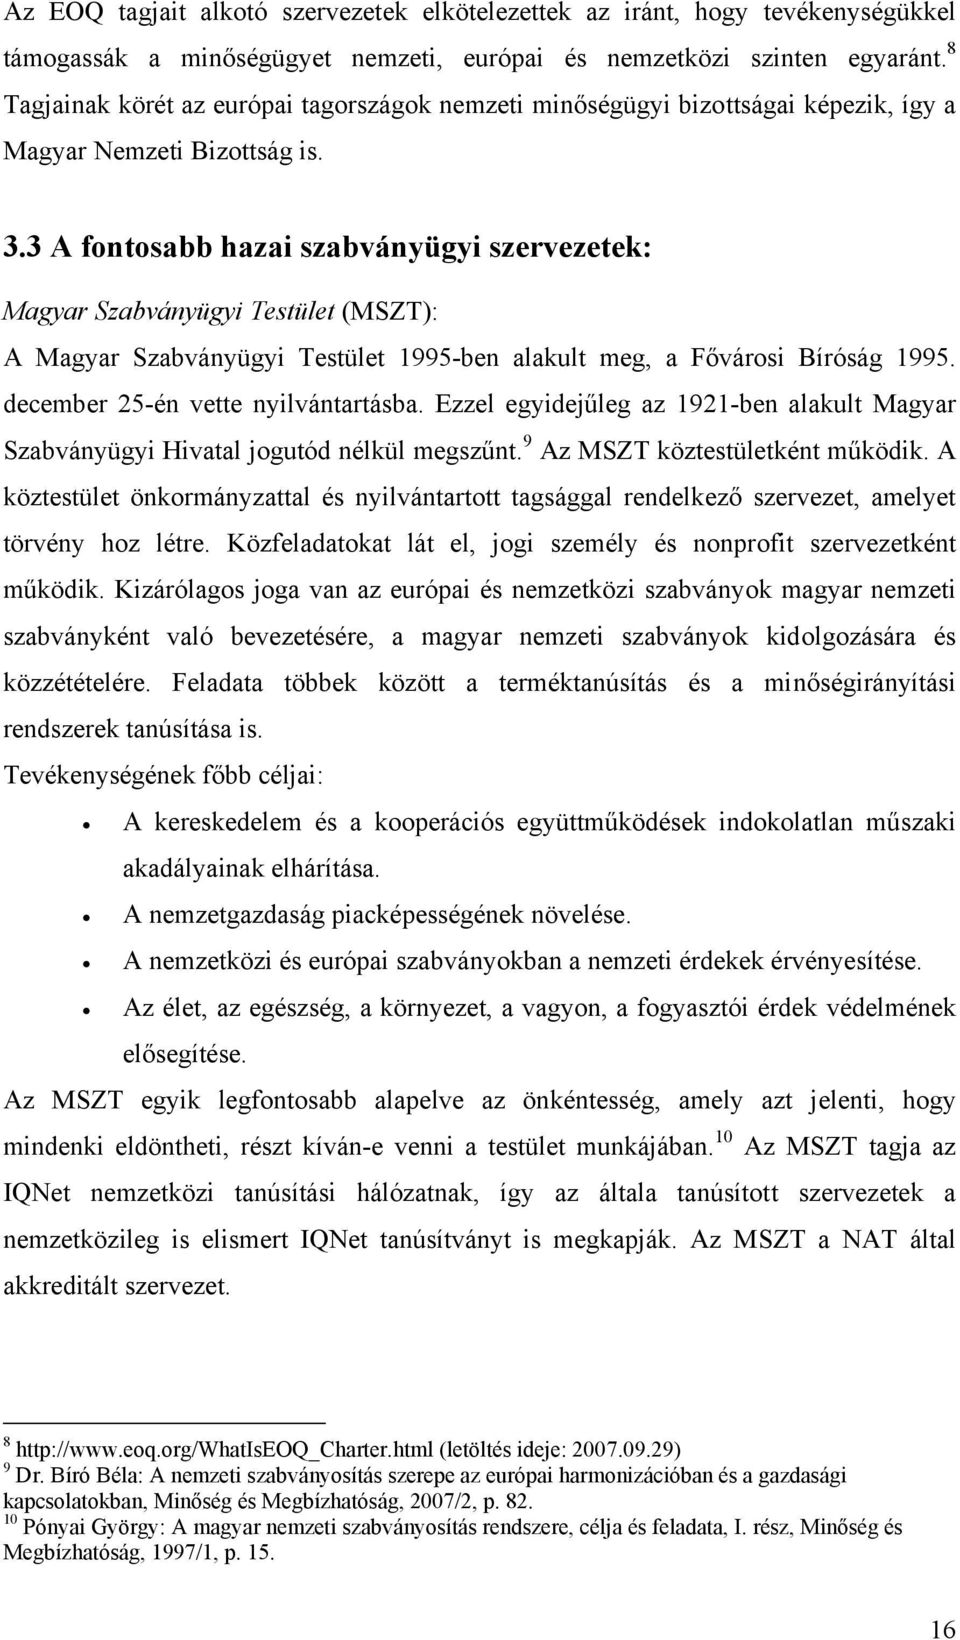 3 A fontosabb hazai szabványügyi szervezetek: Magyar Szabványügyi Testület (MSZT): A Magyar Szabványügyi Testület 1995-ben alakult meg, a Fővárosi Bíróság 1995. december 25-én vette nyilvántartásba.